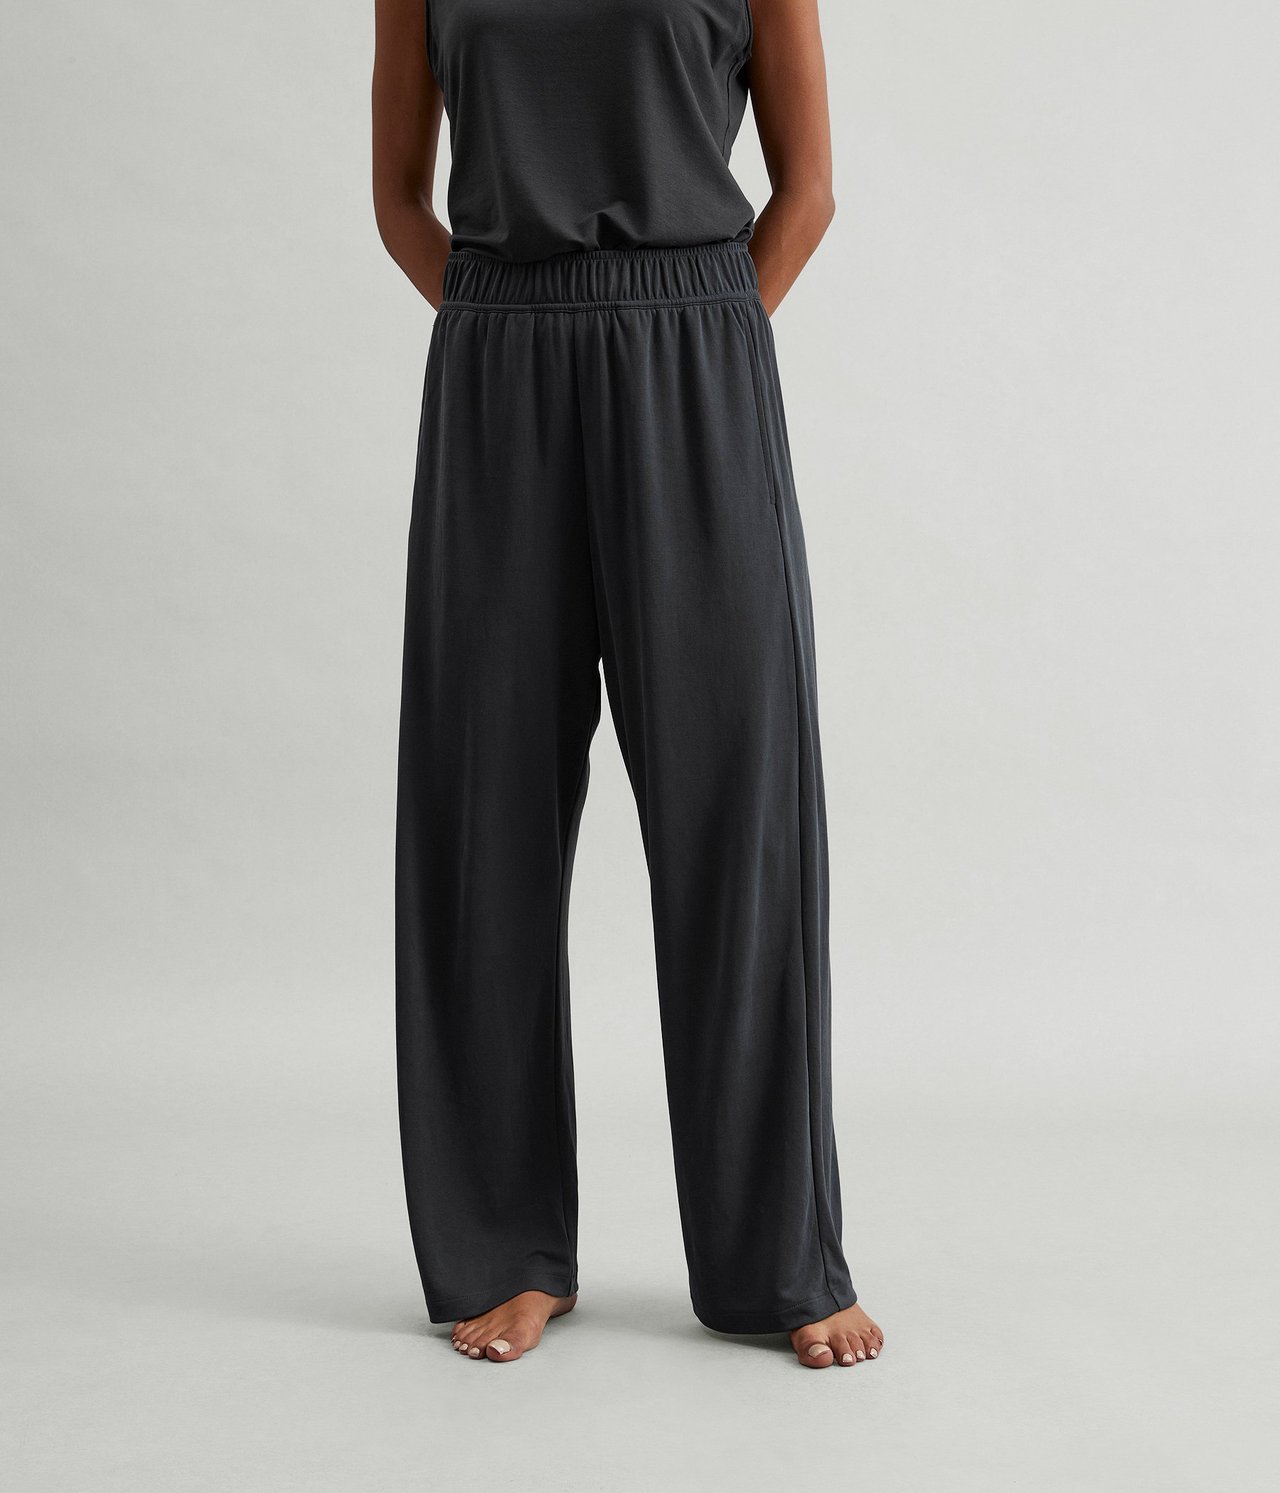 Spodnie trykotowe Loungewear - Czarne - 1